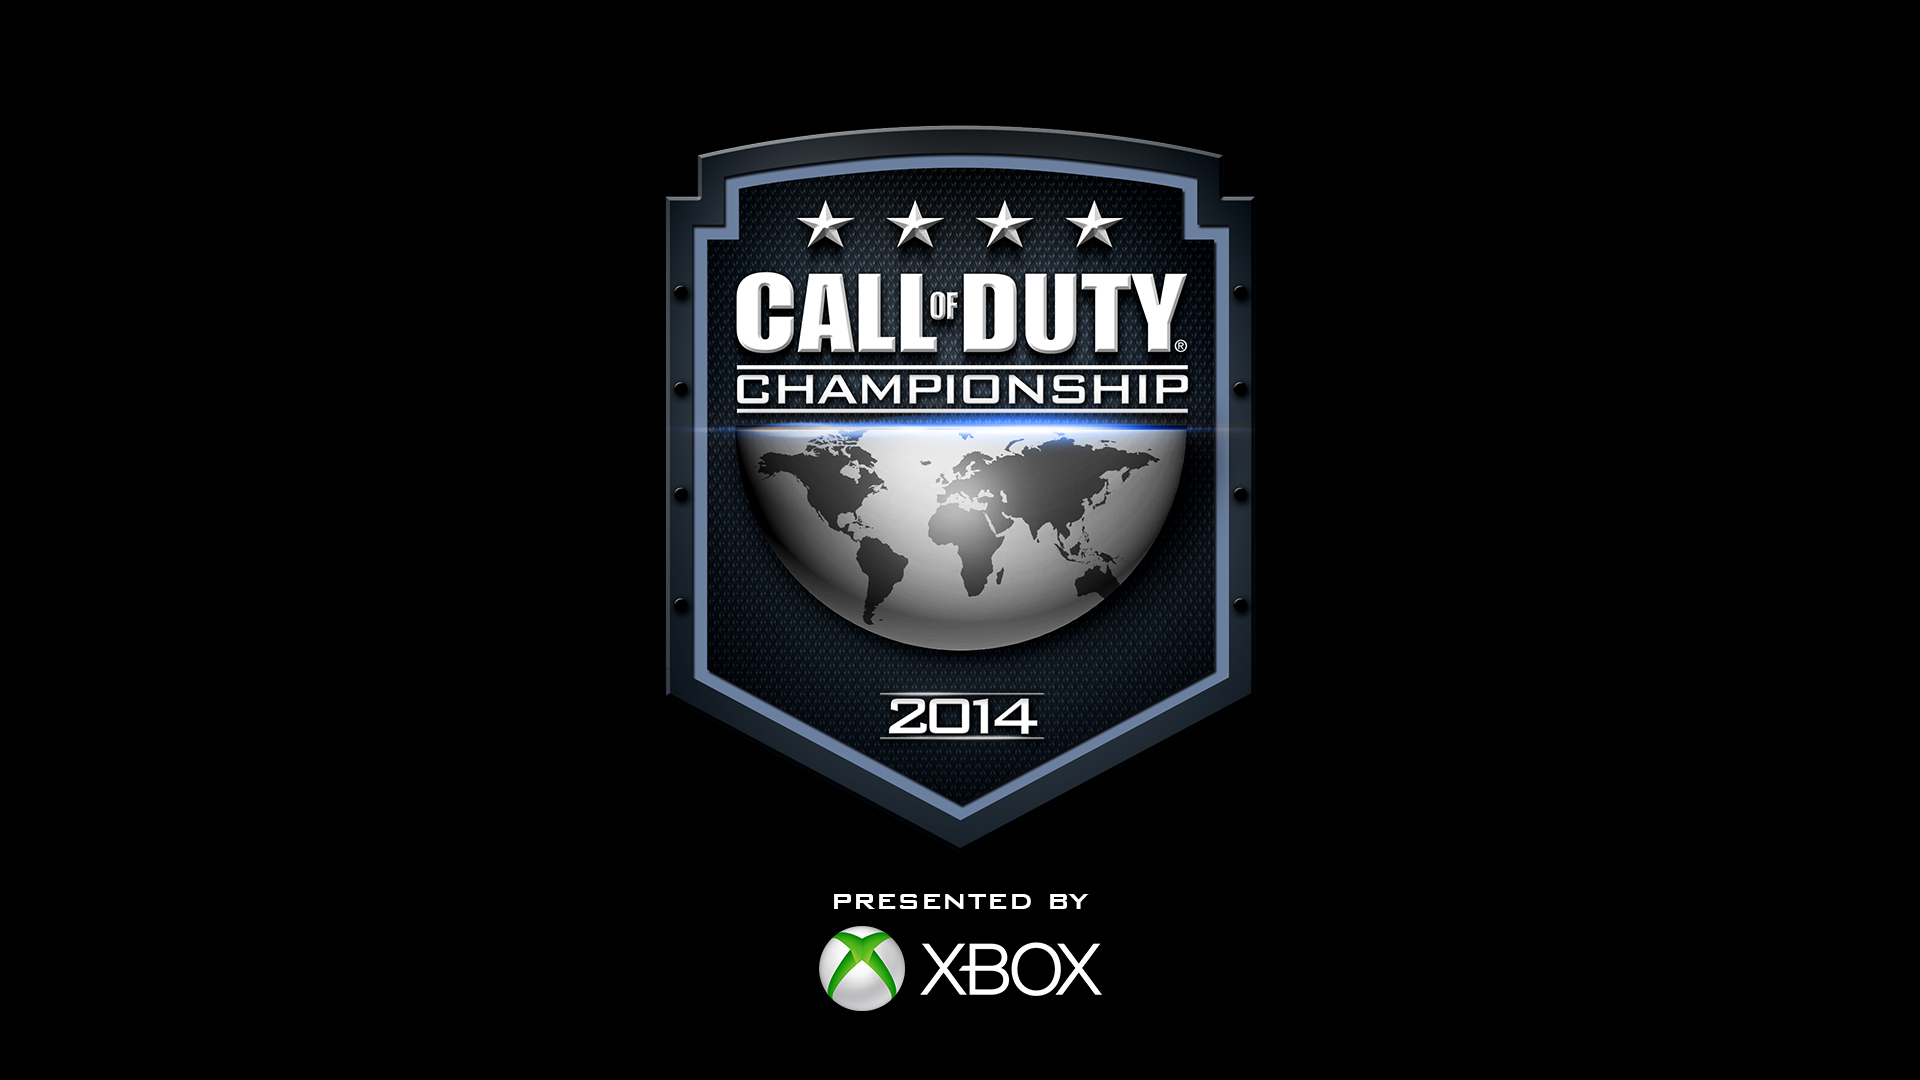 Call of Duty Championship 2014 – Anmeldung noch bis 19. Januar möglich